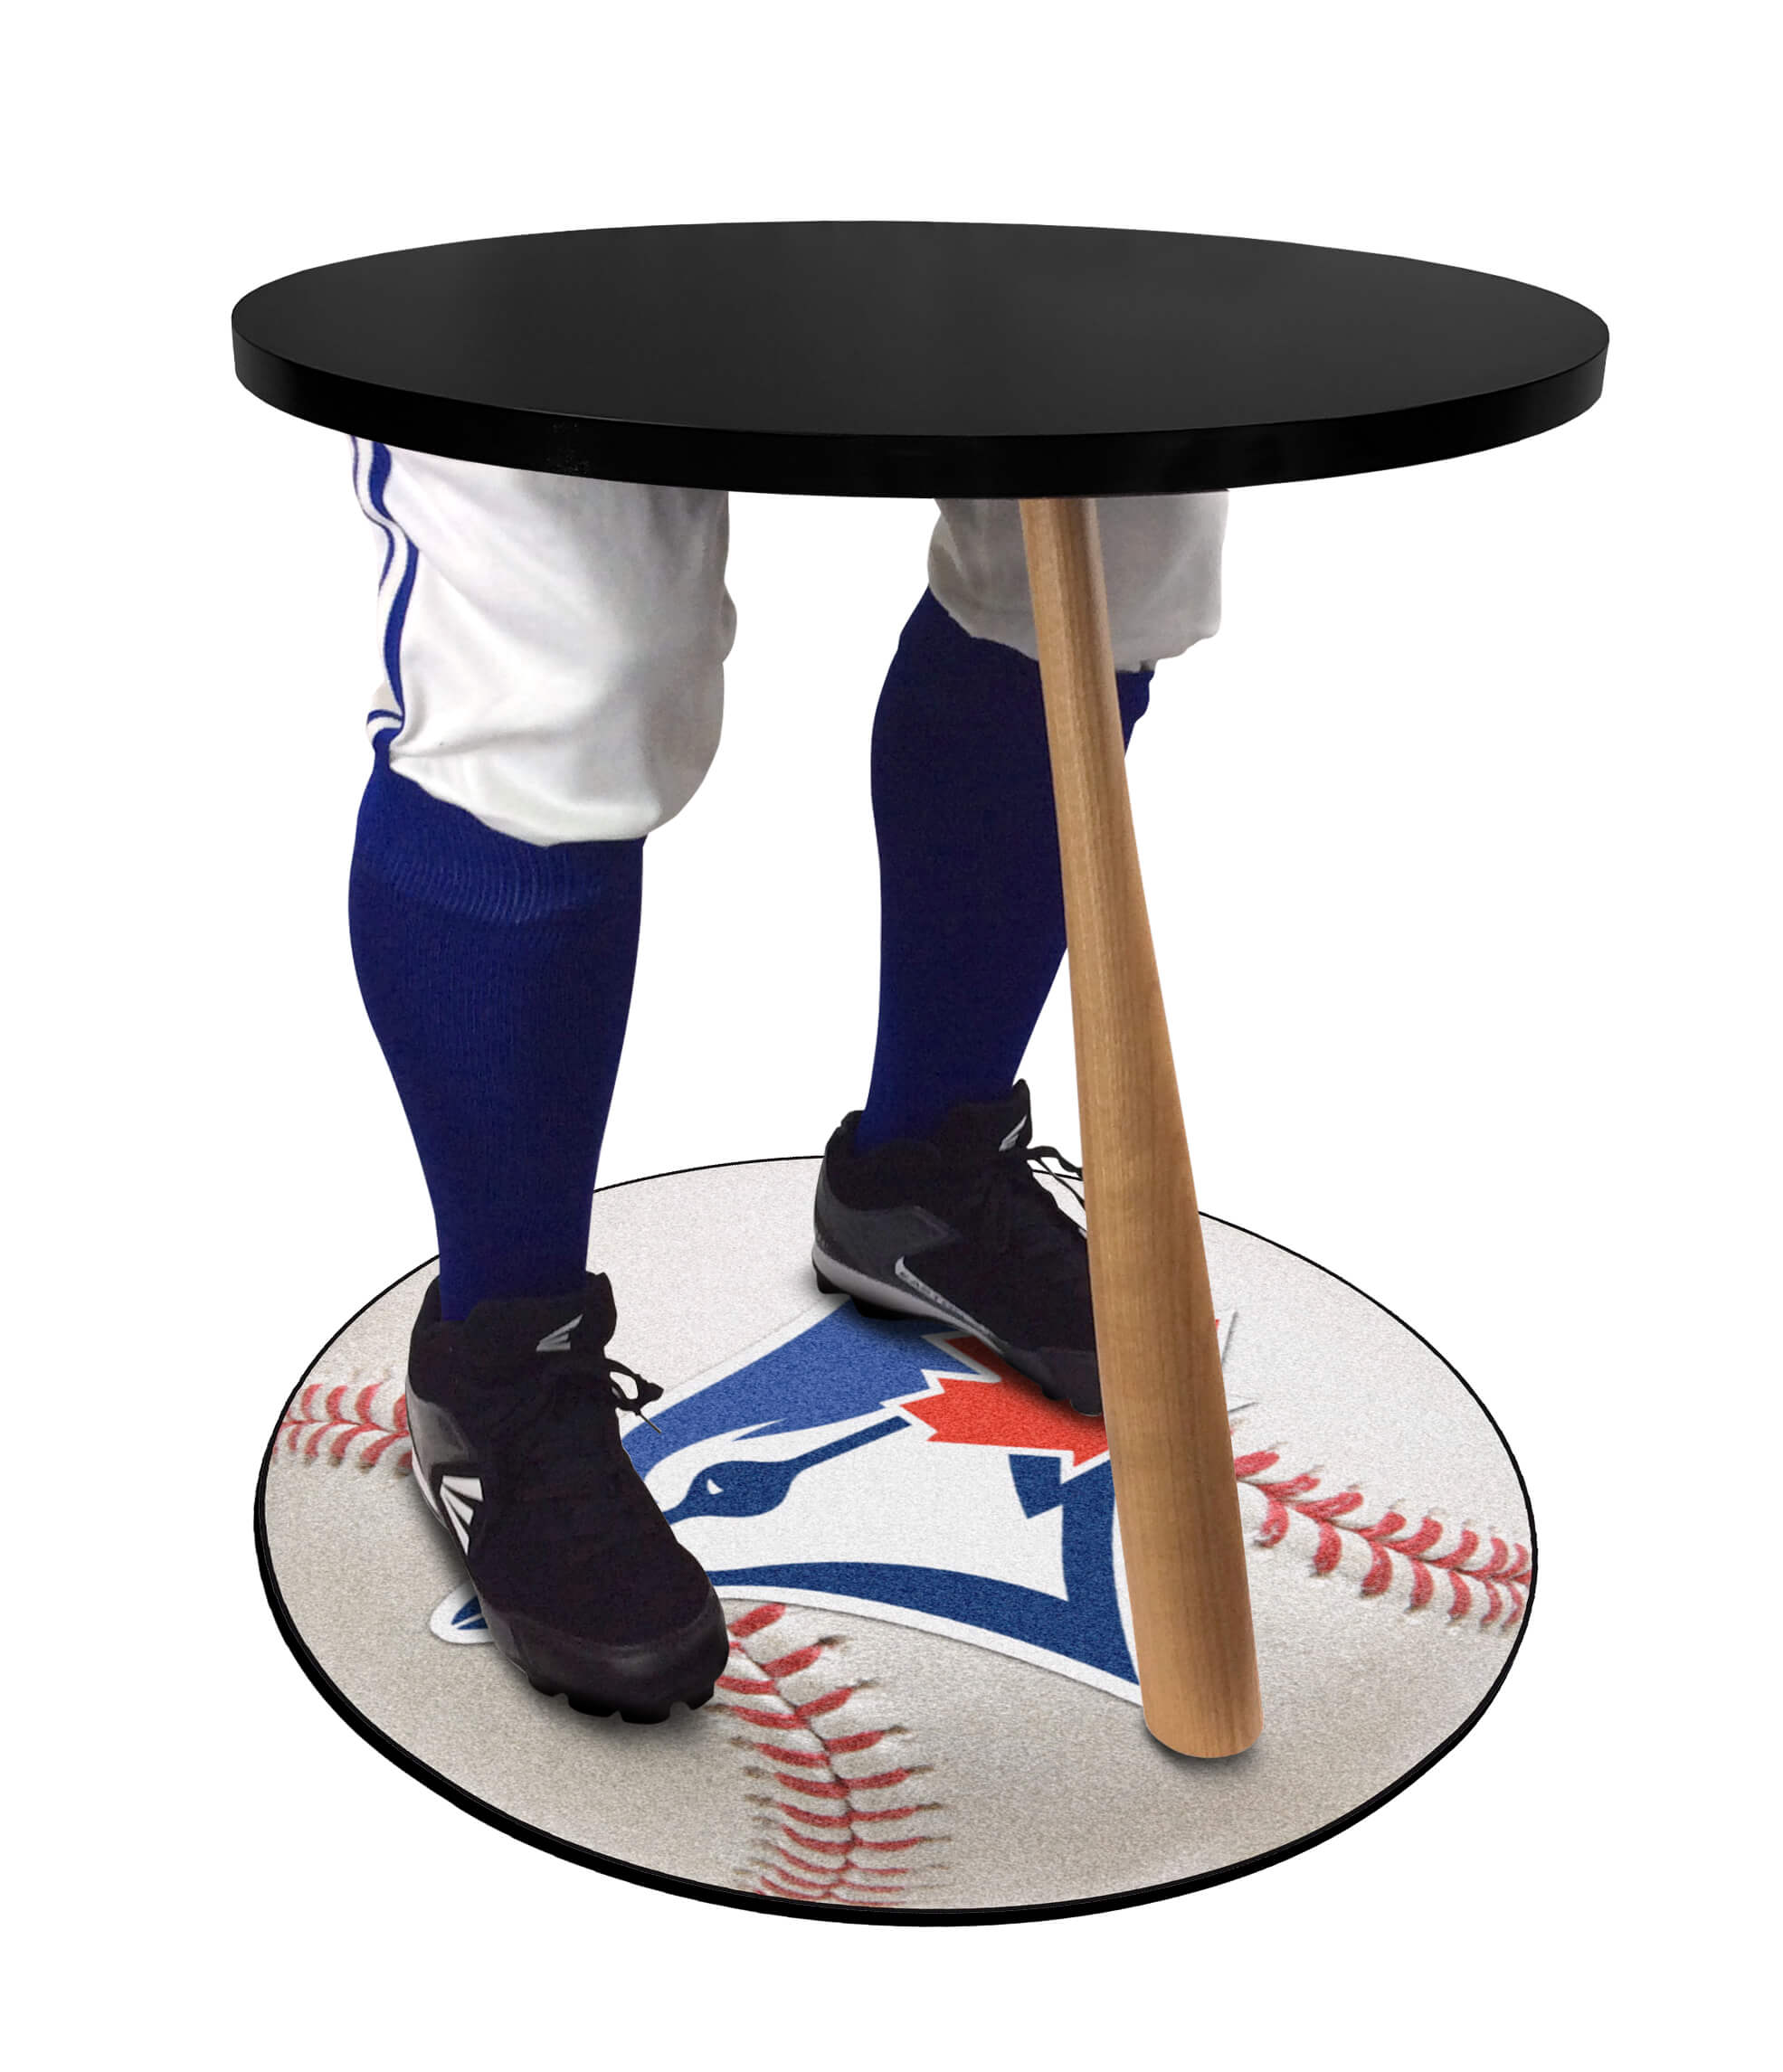 Toronto Baseball Table